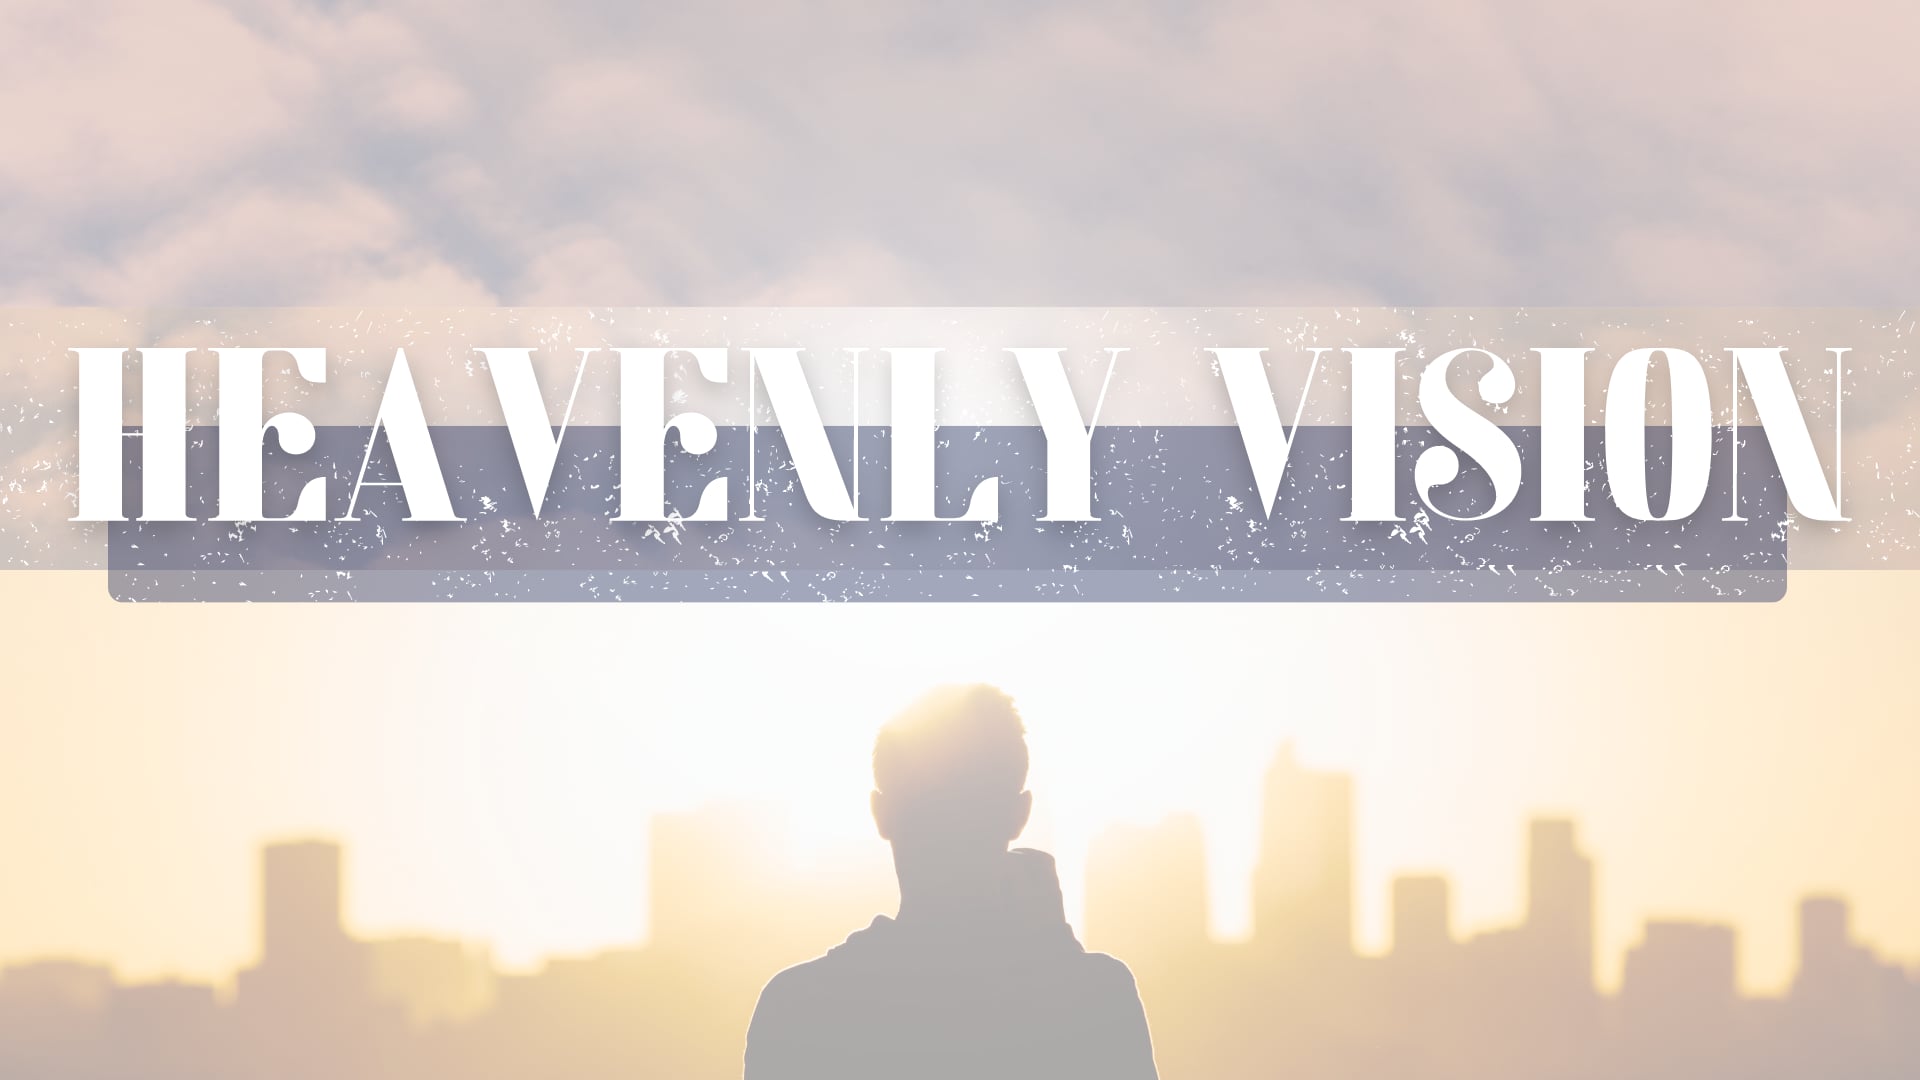 September 4, 2022 Heavenly Vision (Landry Kapongo)